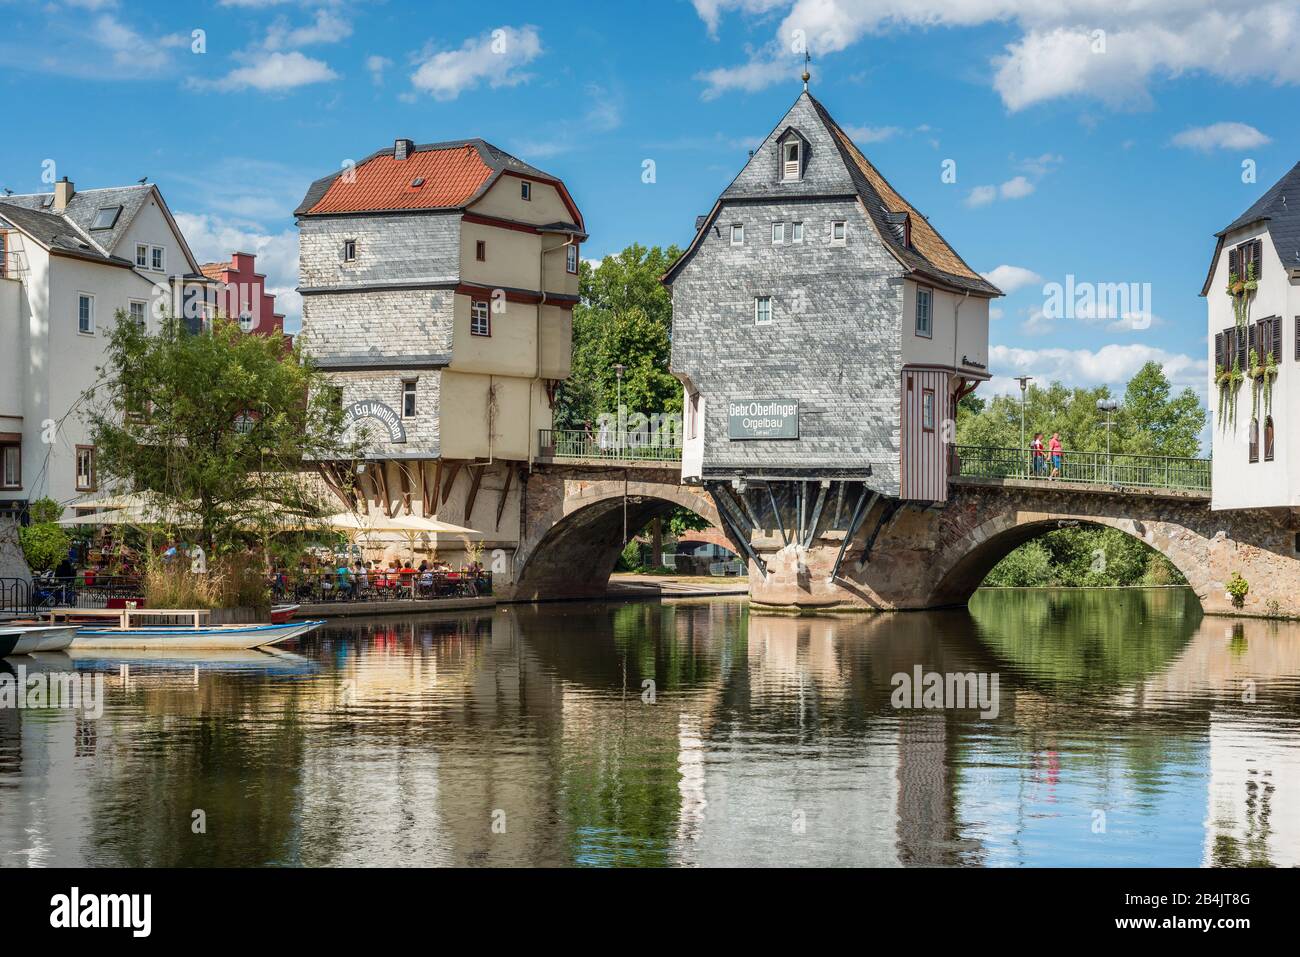 Case ponte a Bad Kreuznach sul Nahe, rarità architettonica dal 1495, le case sono i punti di riferimento del quartiere di Bad Kreuznach, sono costruite sulle colonne ponte del Ponte Vecchio Nahe, ponte attraversa sia il Nahe, e il mulino stagno Foto Stock